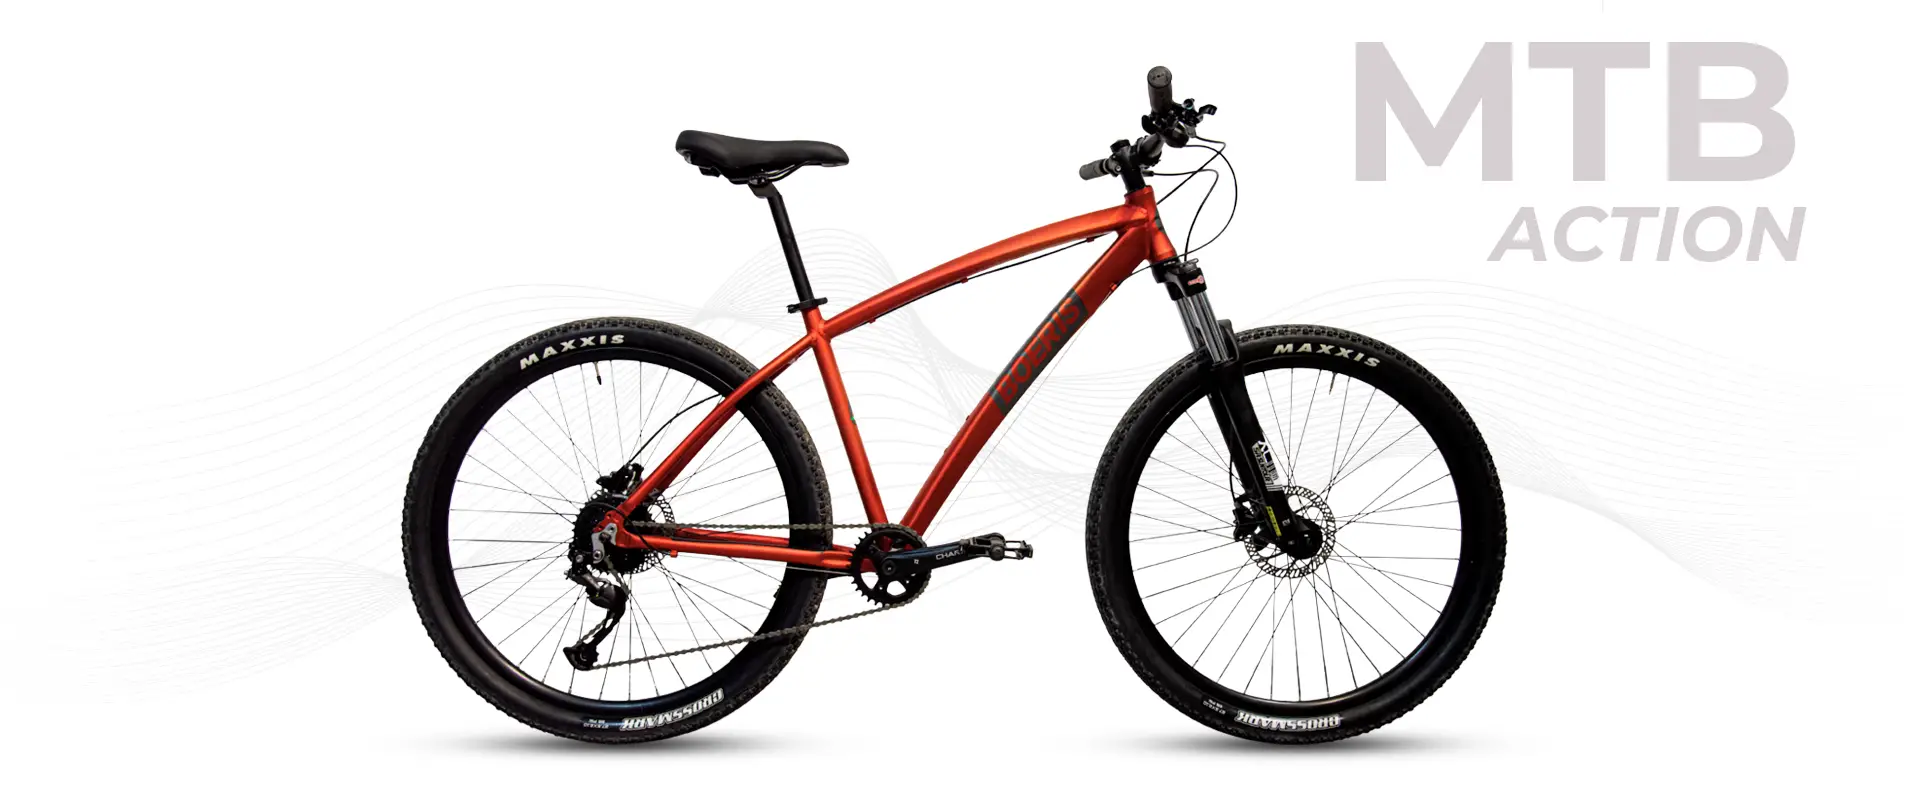 mtb action boeris bikes torino colore rosso